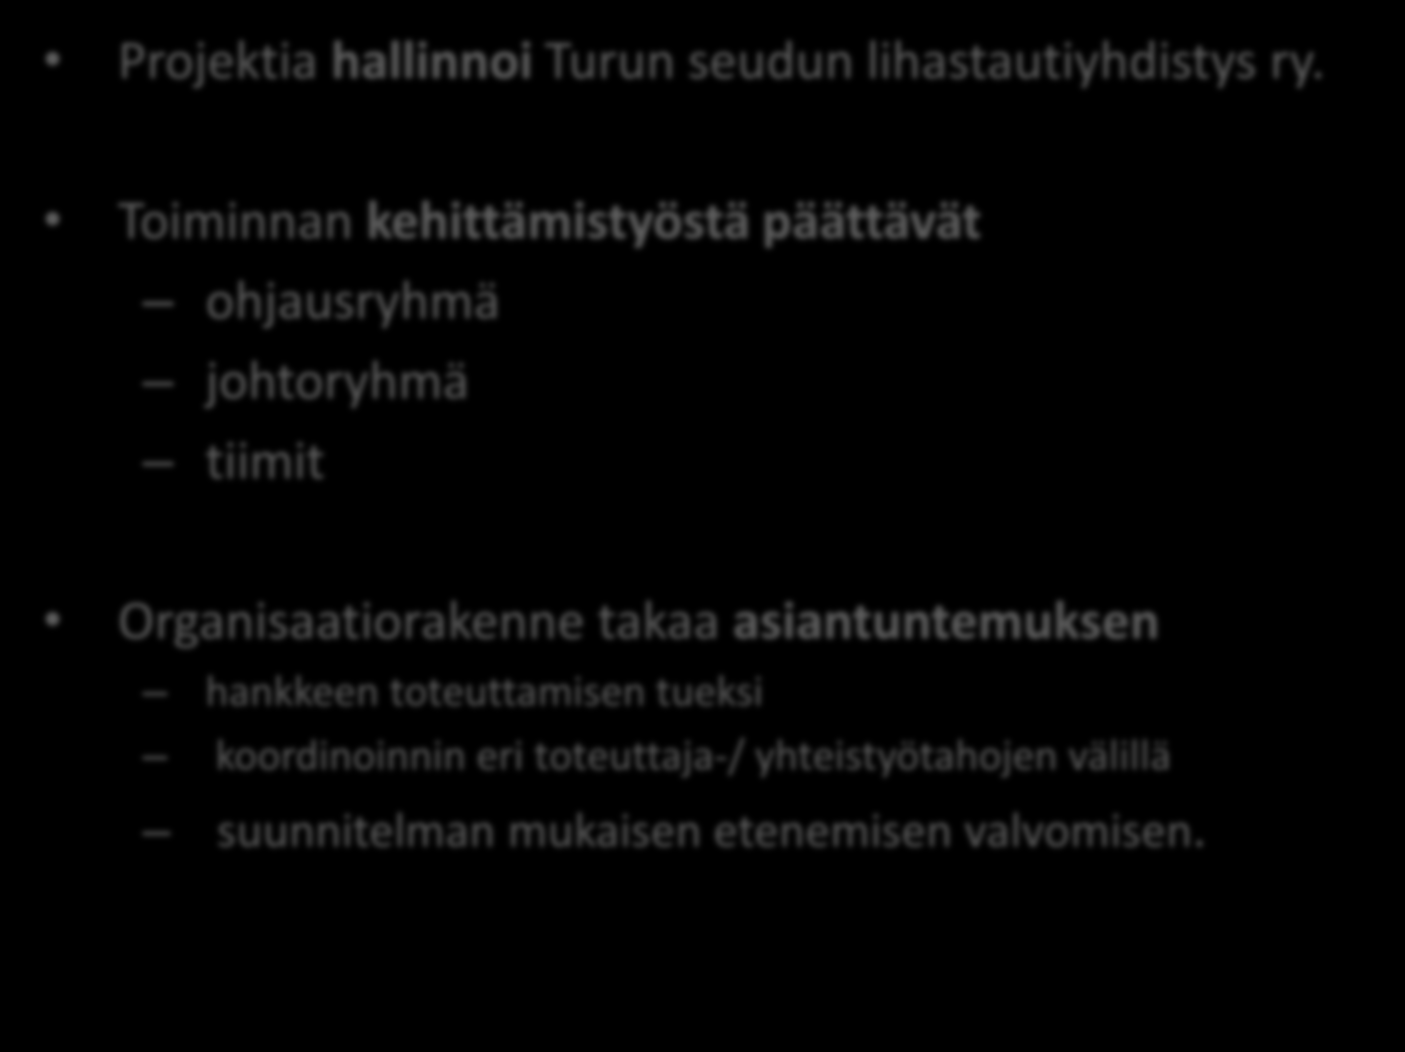 Projektia hallinnoi Turun seudun lihastautiyhdistys ry.